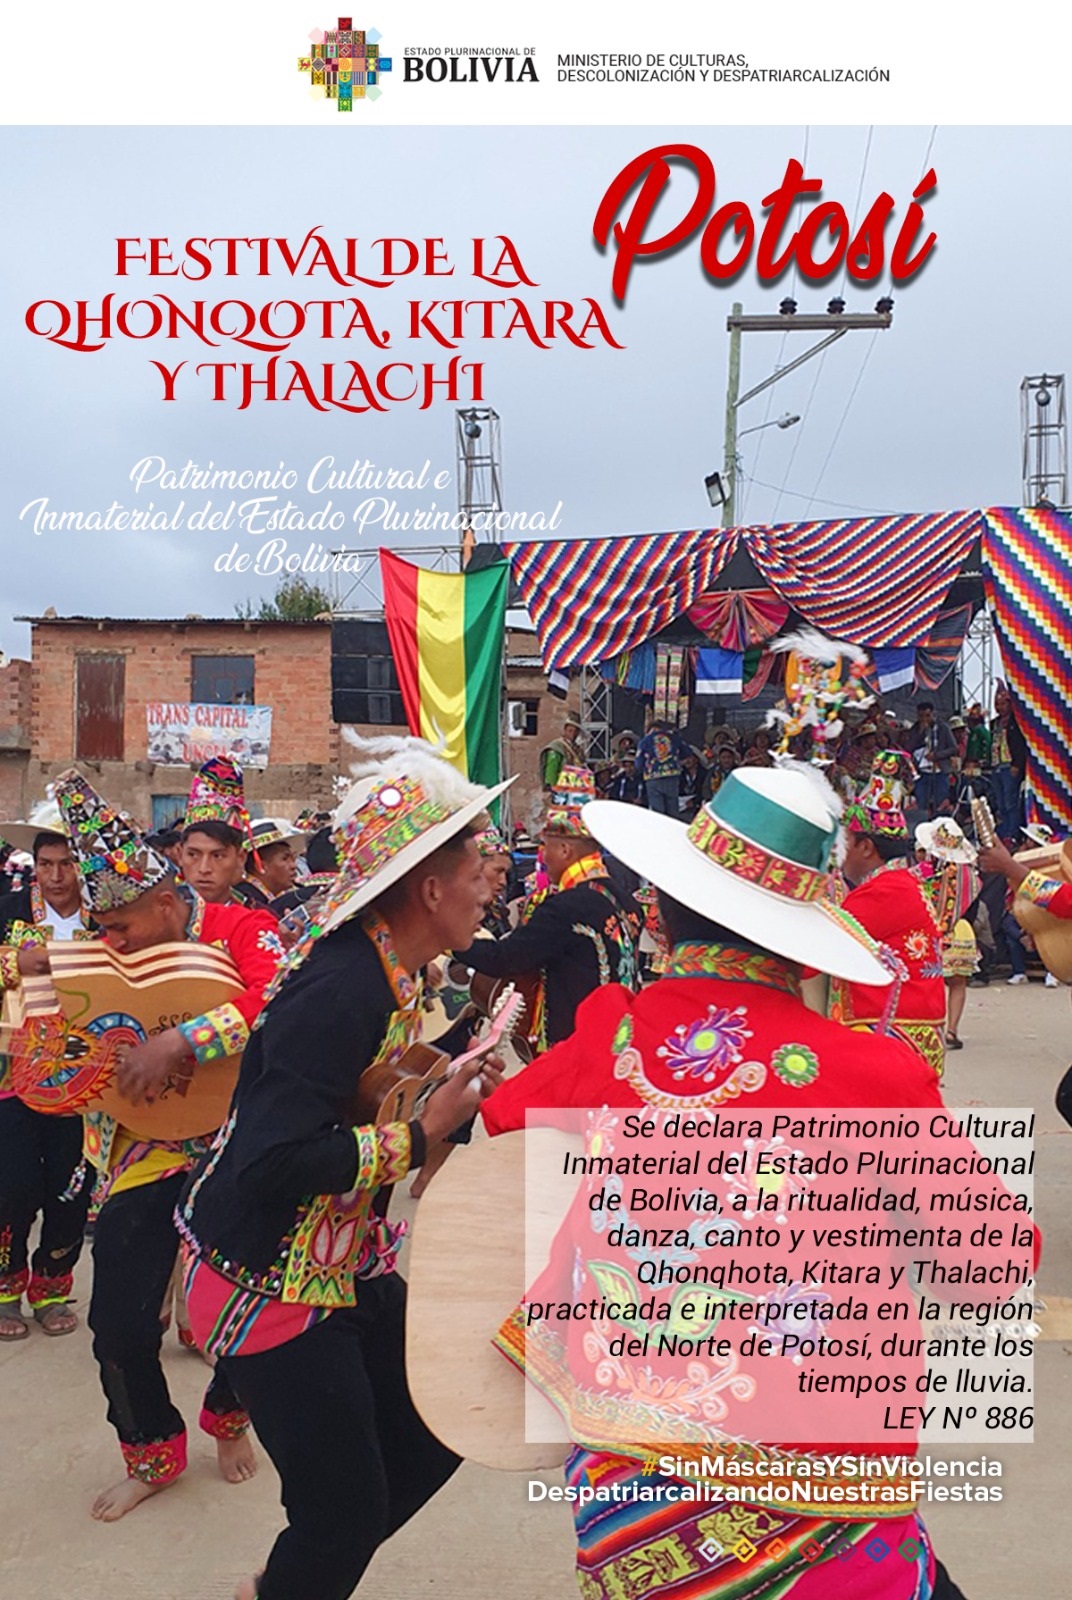 Potosí Festival de la QhonQota, Kitara y Thalachi - 